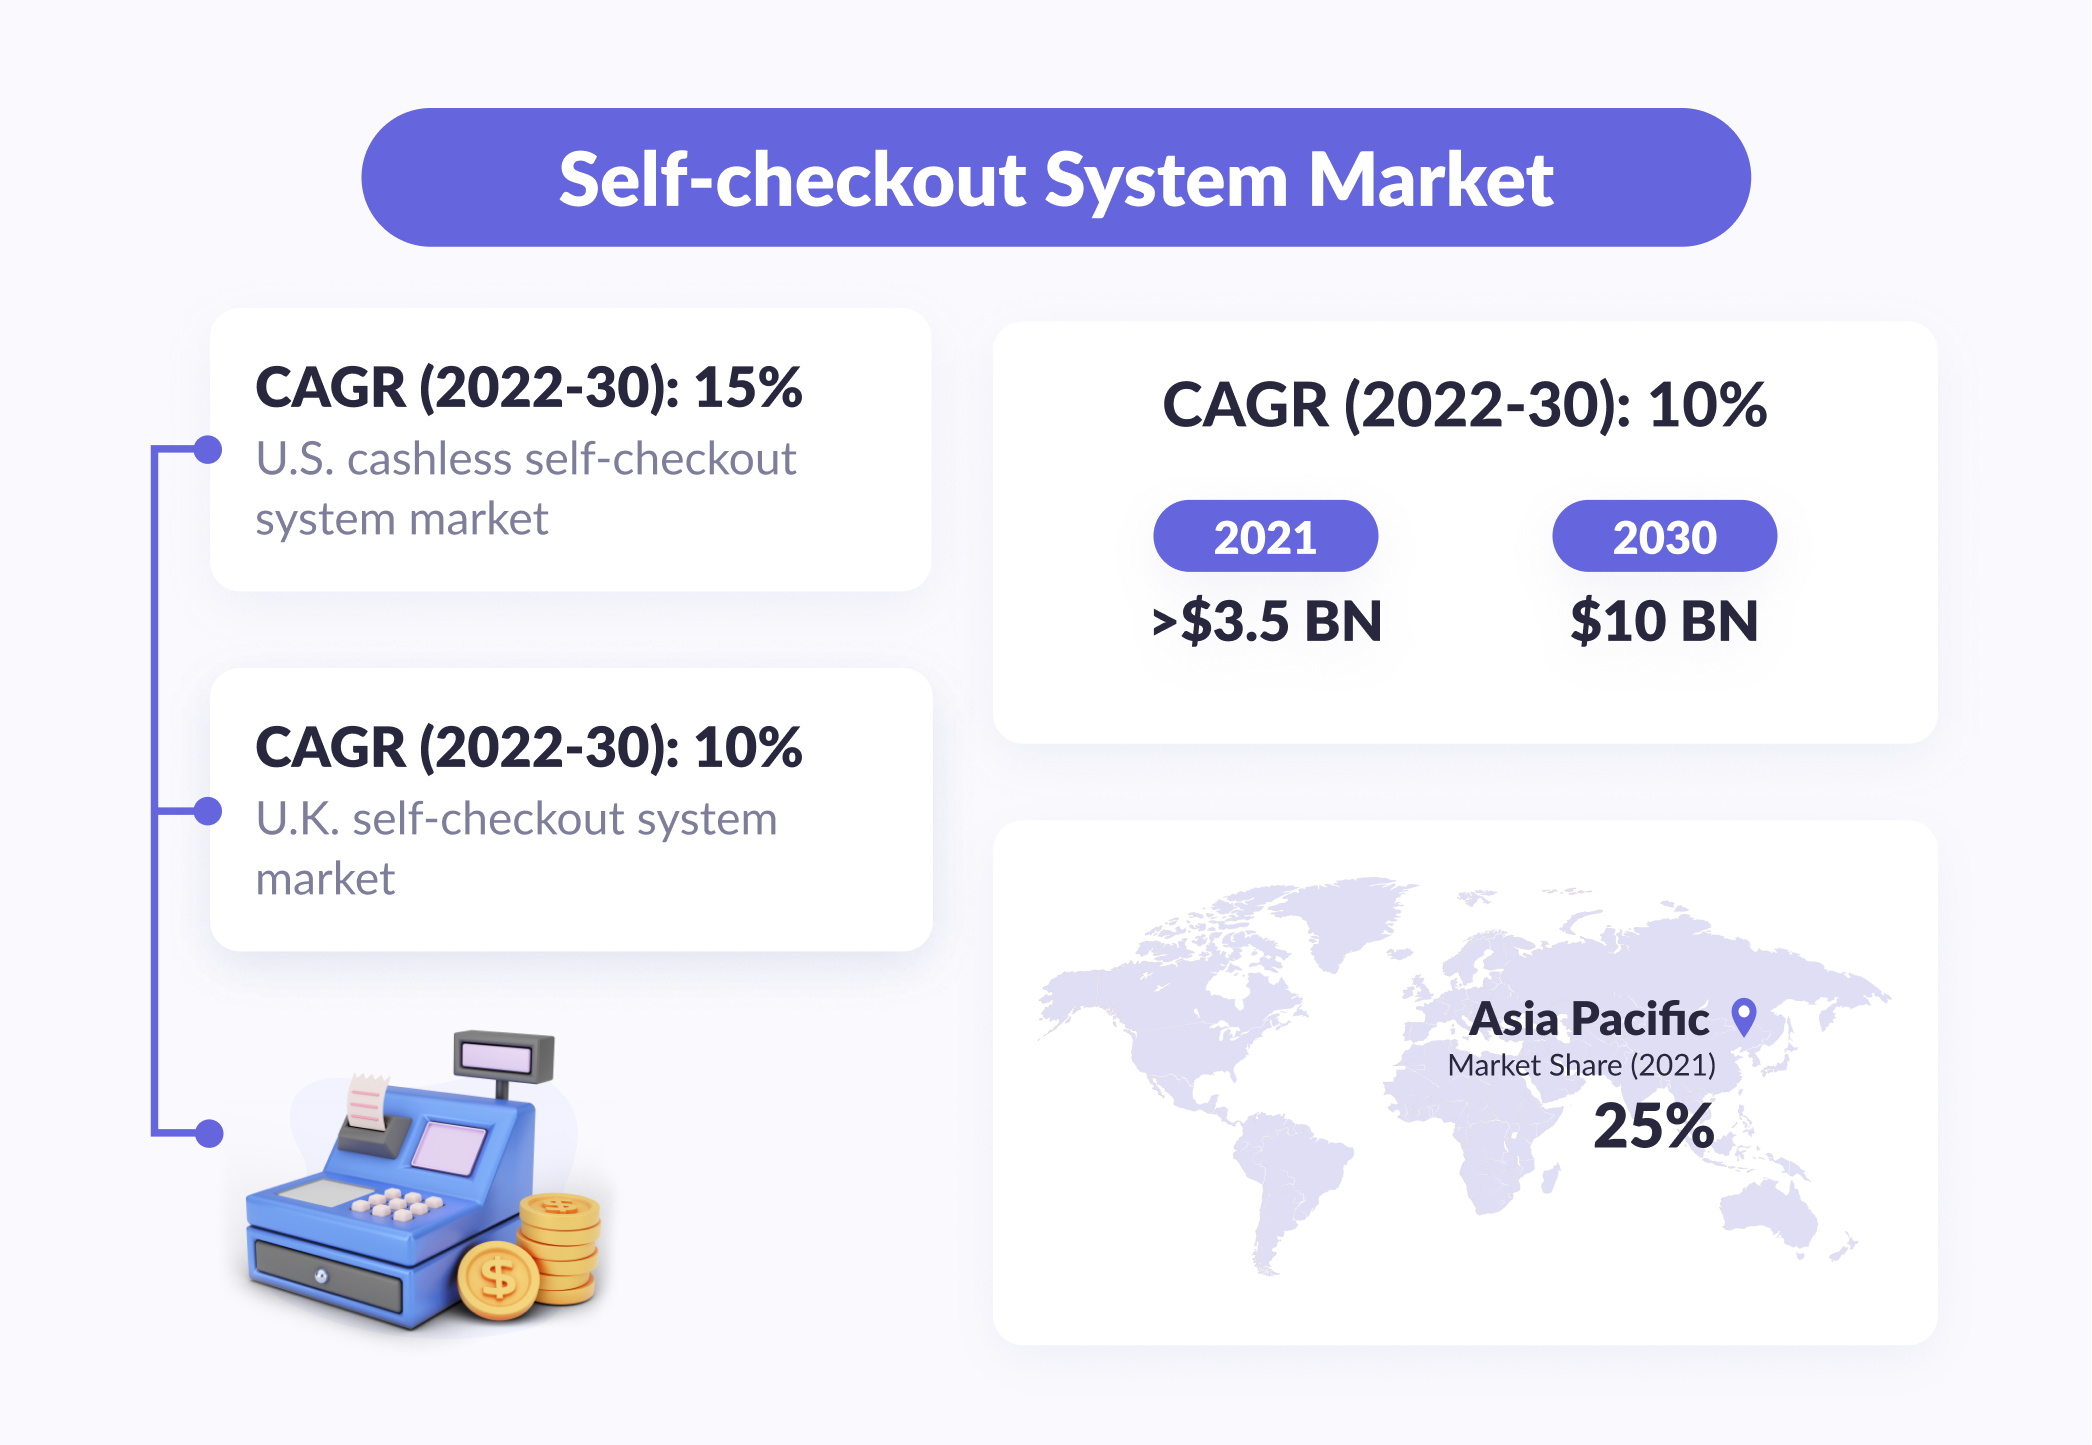 Self-checkout system market